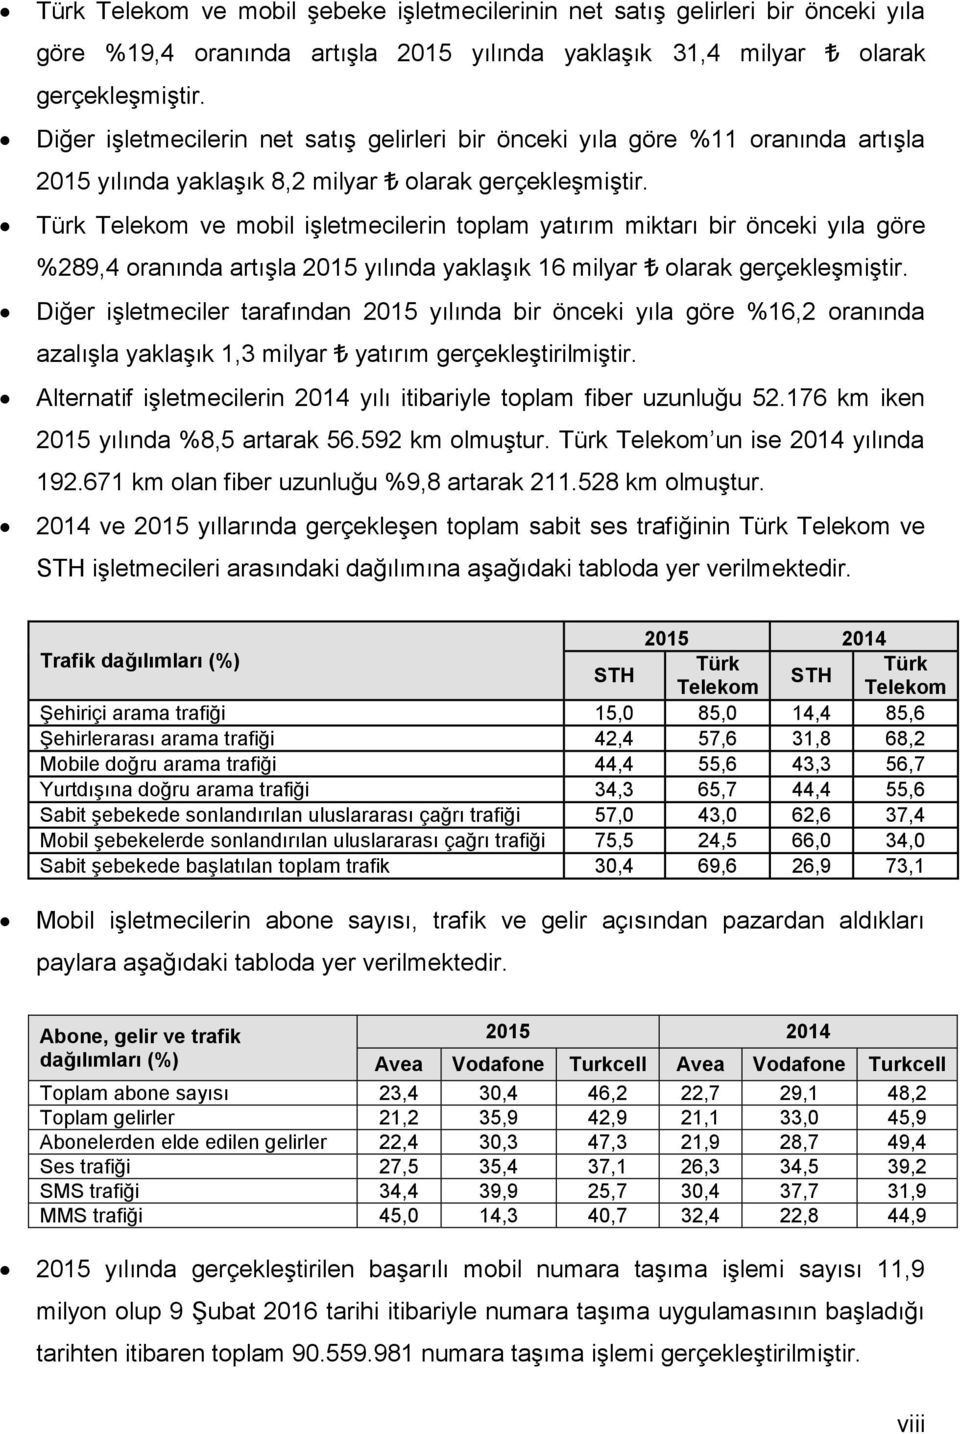 Türk Telekom ve mobil işletmecilerin toplam yatırım miktarı bir önceki yıla göre %289,4 oranında artışla 215 yılında yaklaşık 16 milyar olarak gerçekleşmiştir.